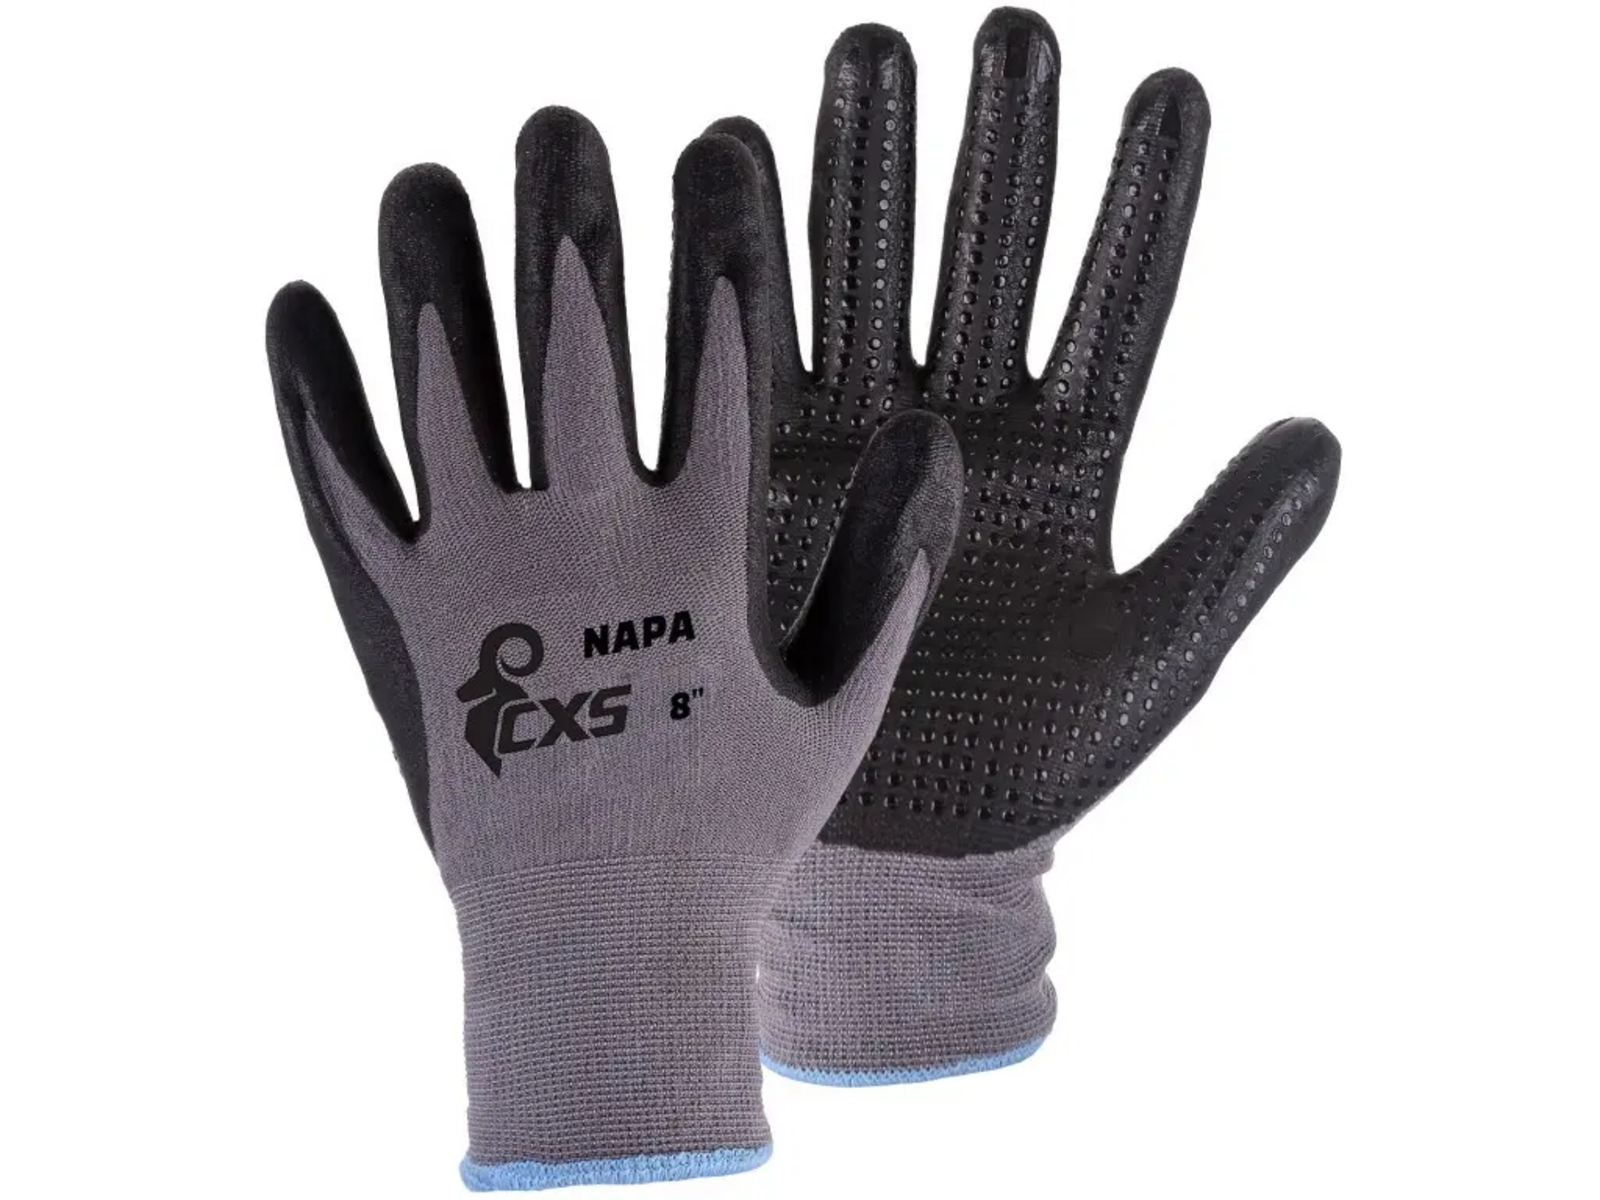 Povrstvené rukavice CXS Napa - veľkosť: 9/L, farba: sivá/čierna